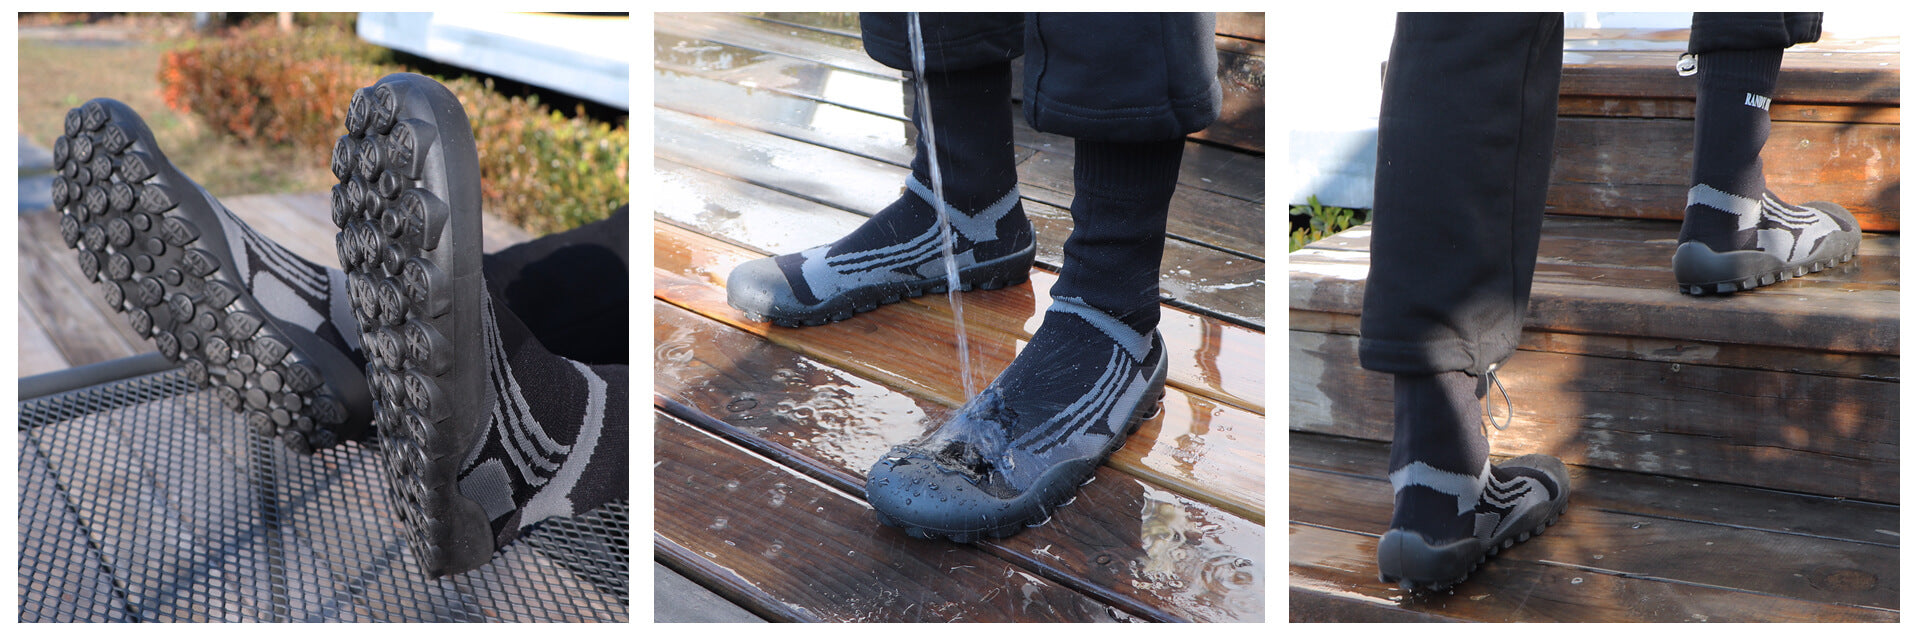 fishing waterproof shoes